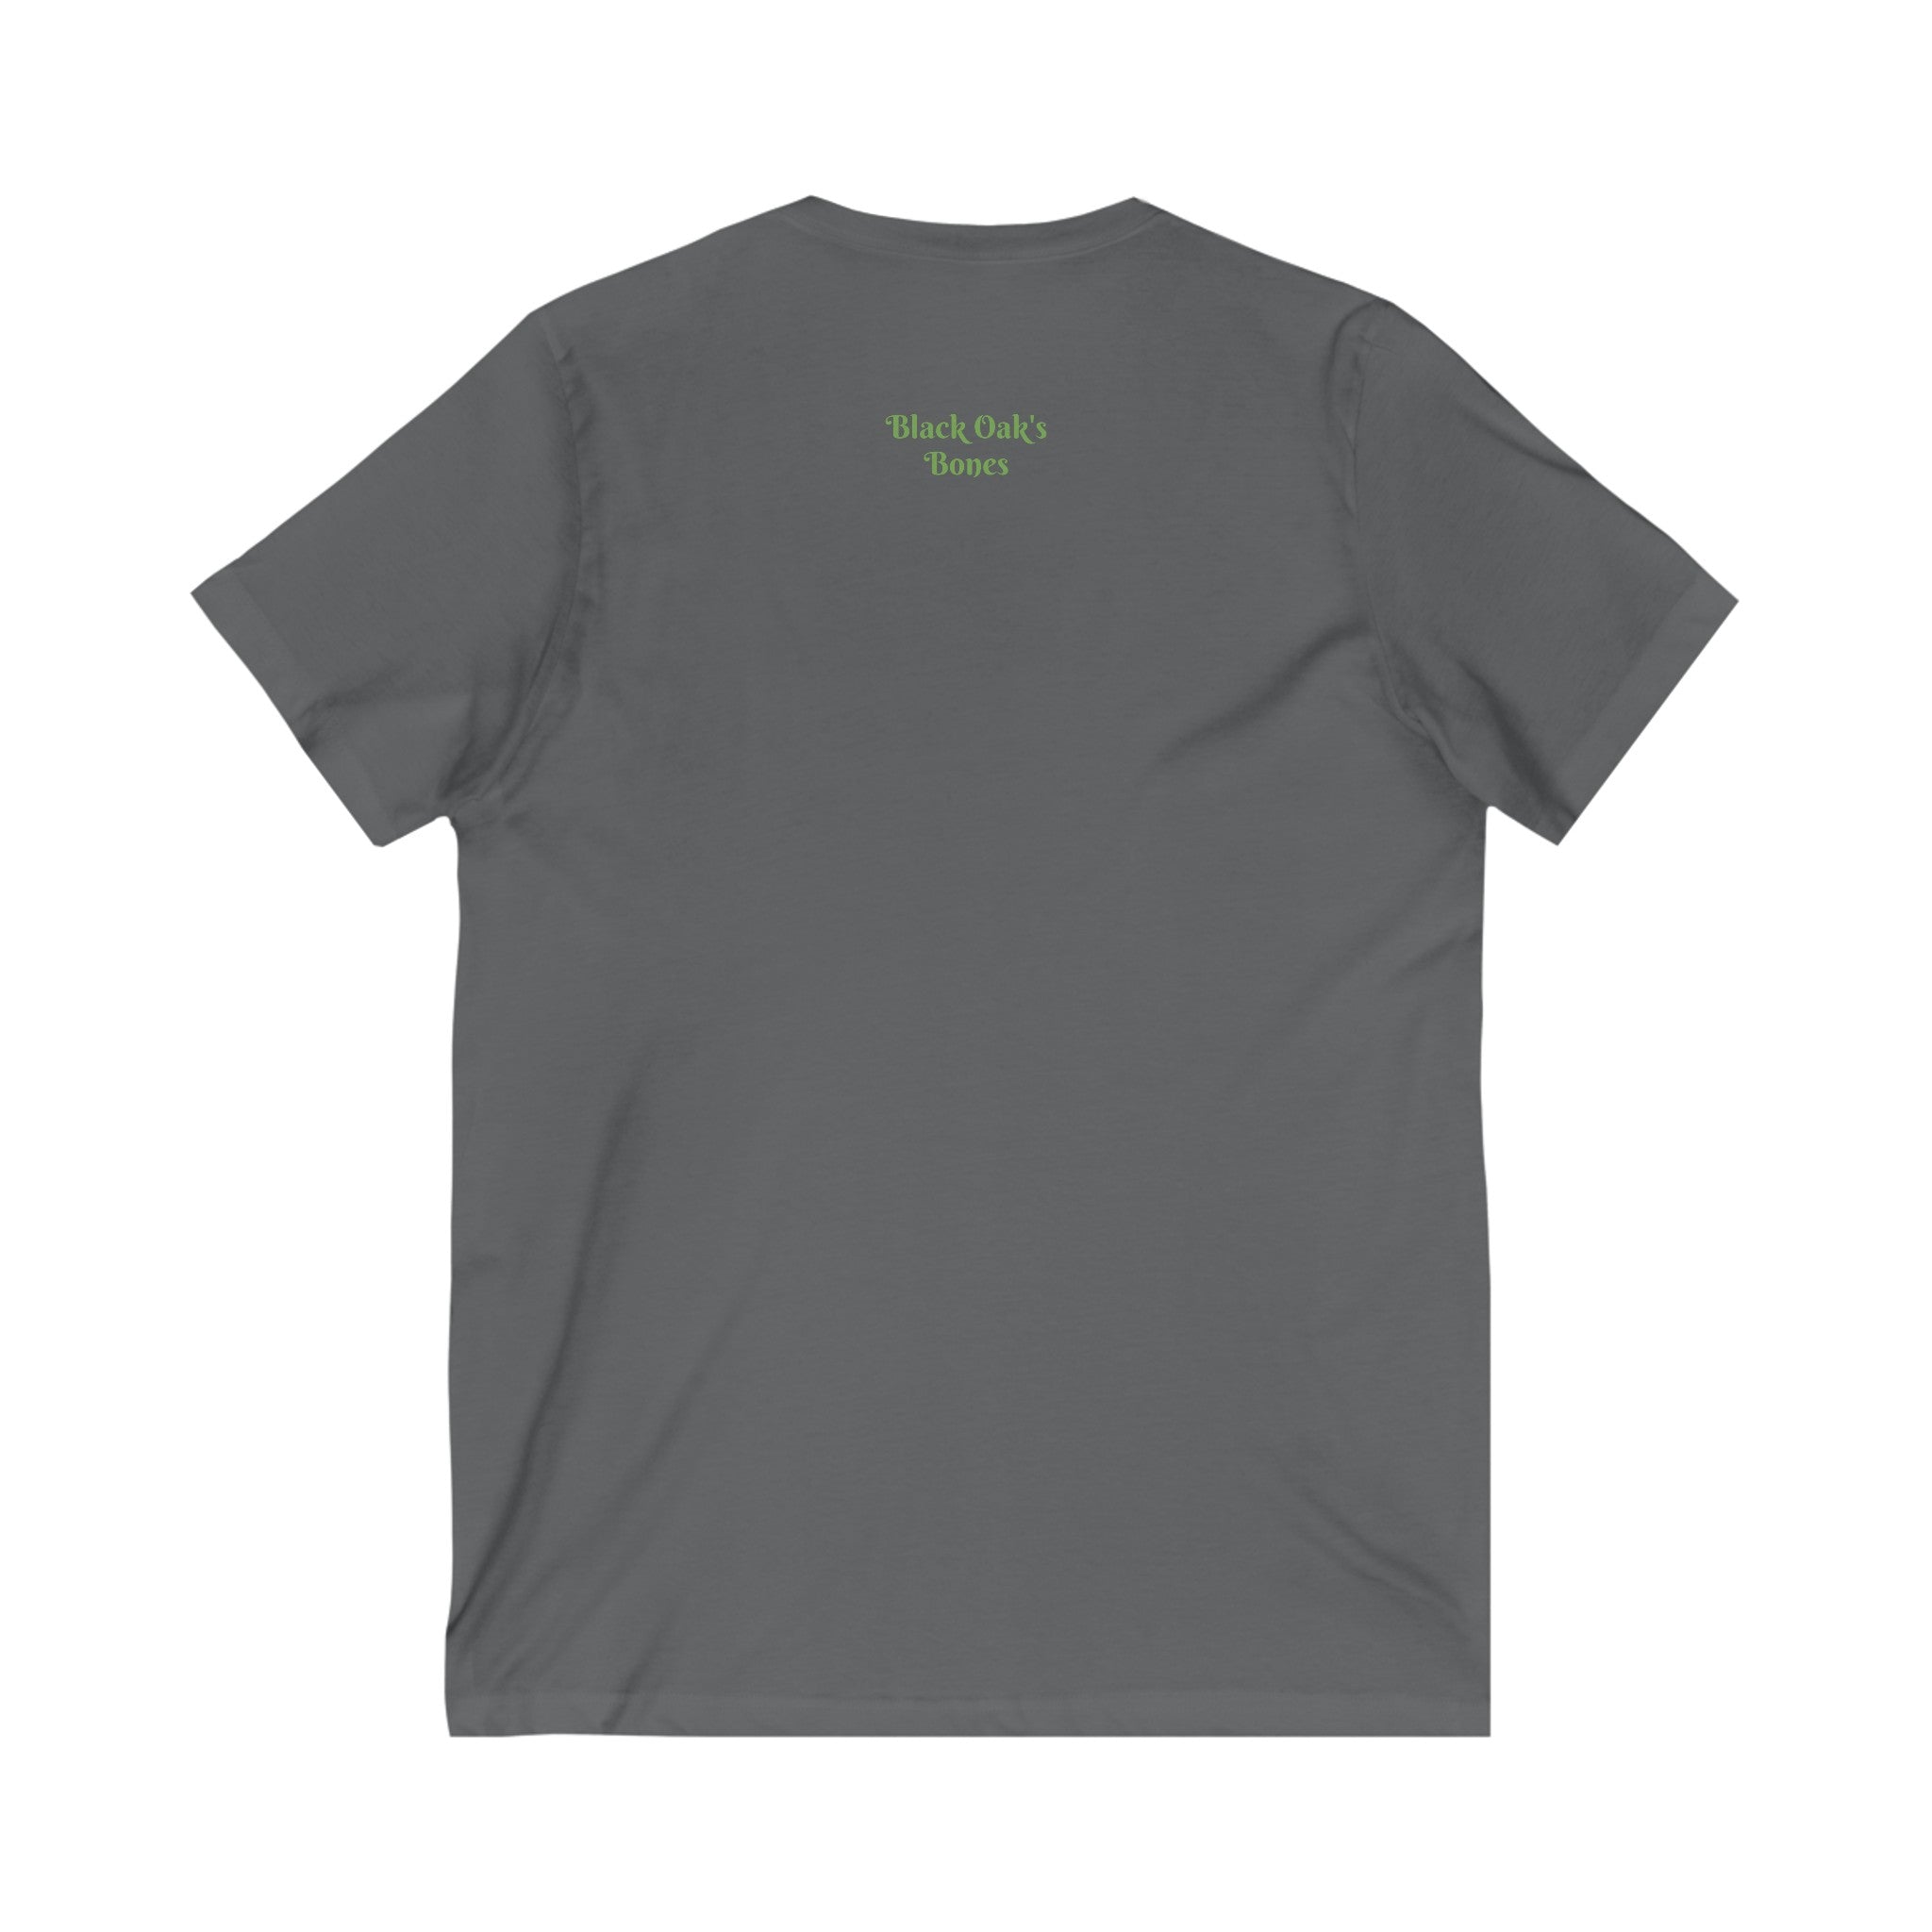 FURDreams “UNC Sucks” I V-Neck Tee Shirt